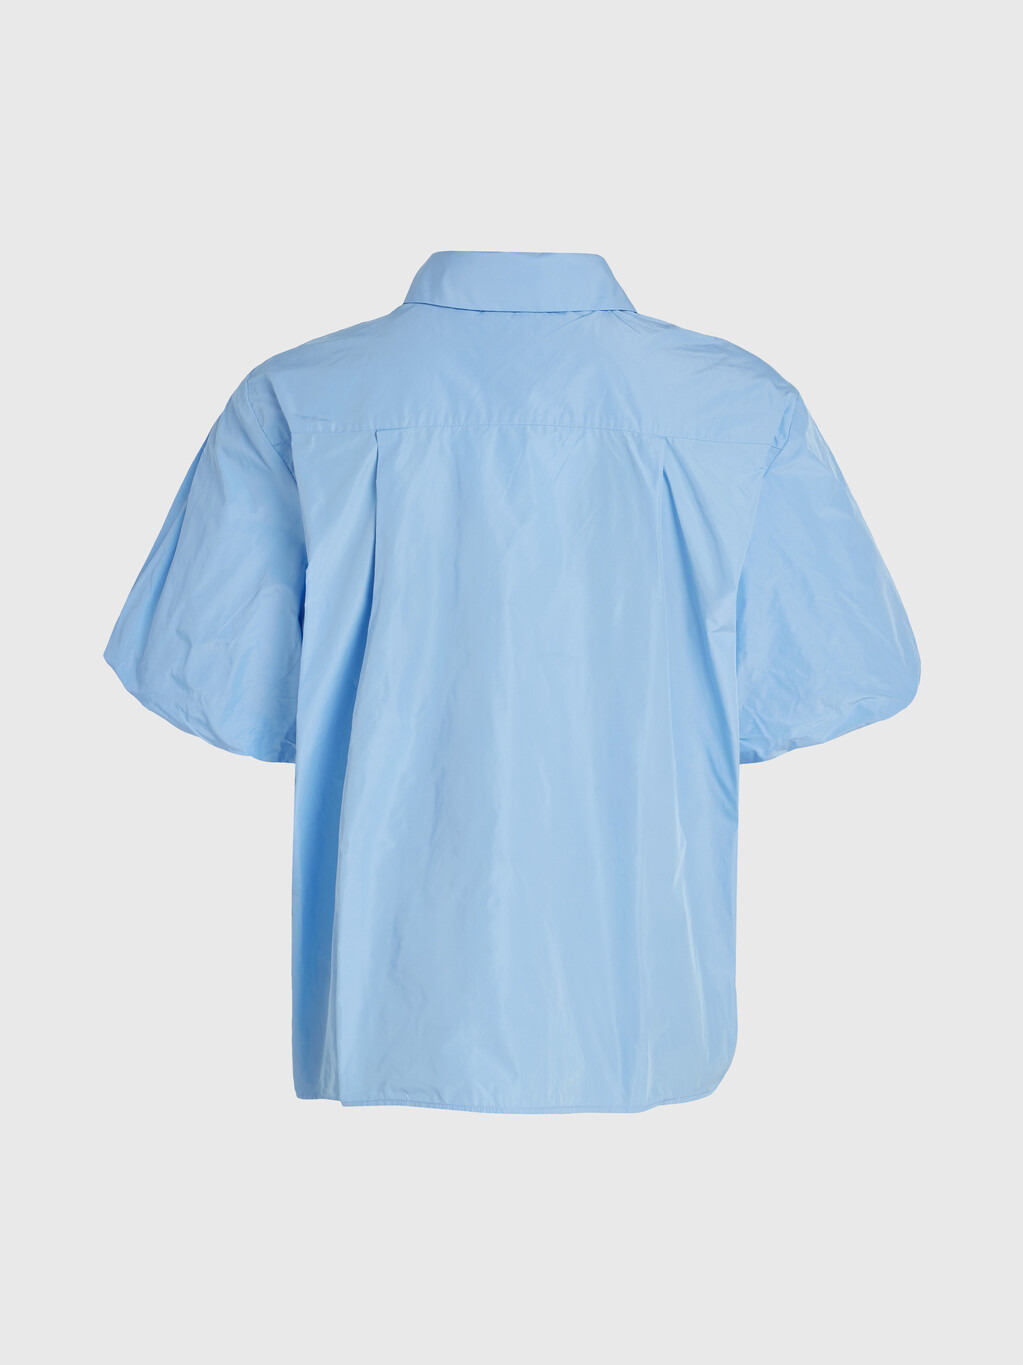 塔夫綢泡泡短袖寬鬆裇衫, Vessel Blue, hi-res